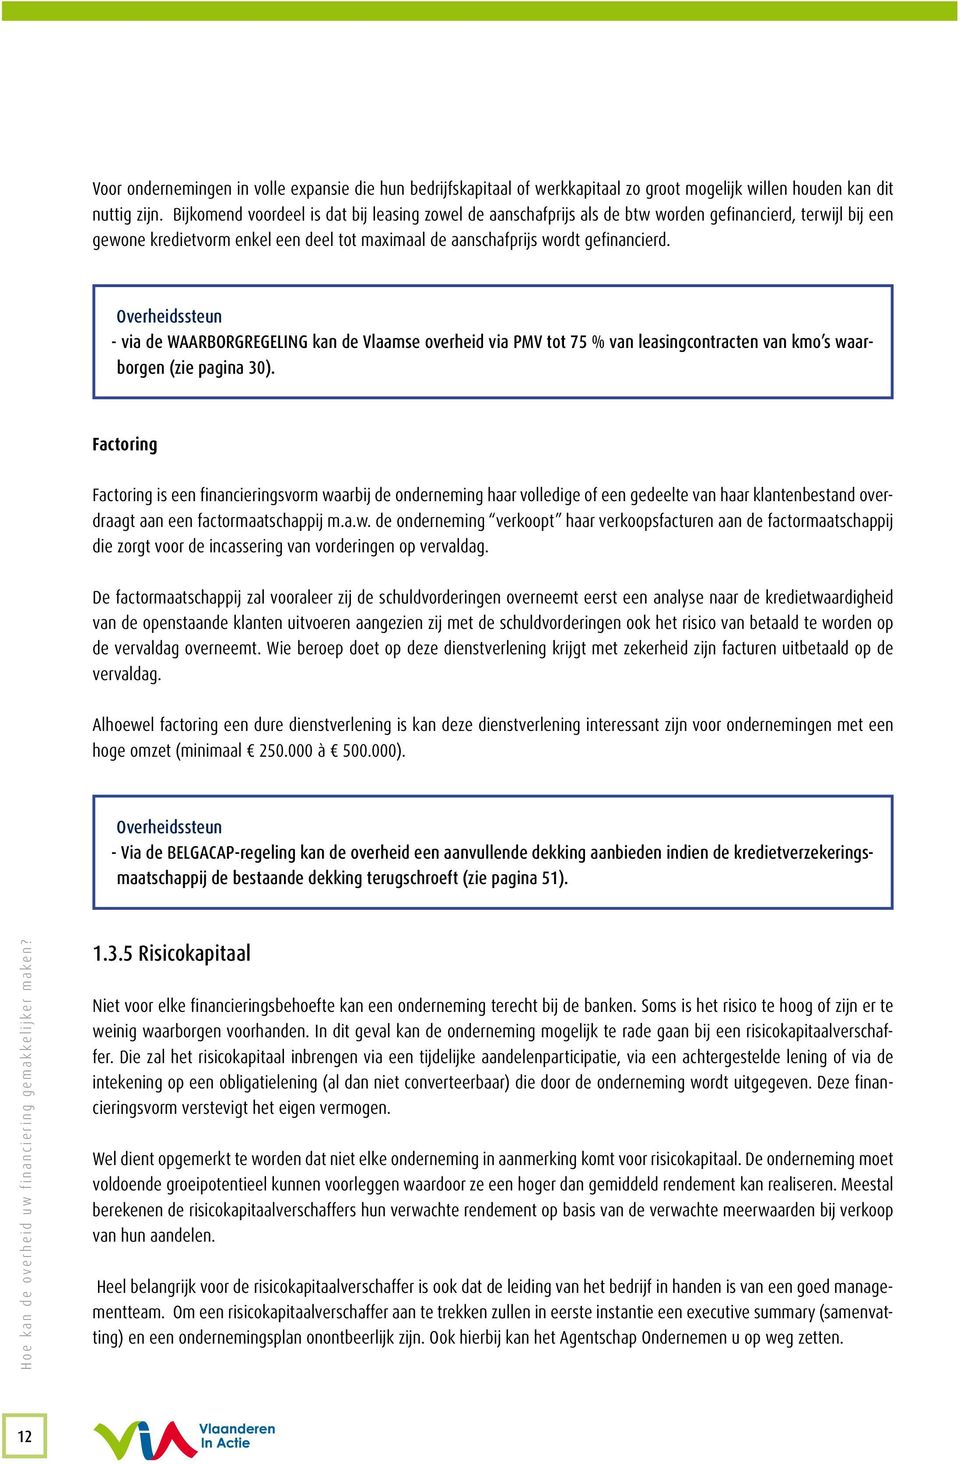 Overheidssteun - via de WAARBORGREGELING kan de Vlaamse overheid via PMV tot 75 % van leasingcontracten van kmo s waarborgen (zie pagina 30).